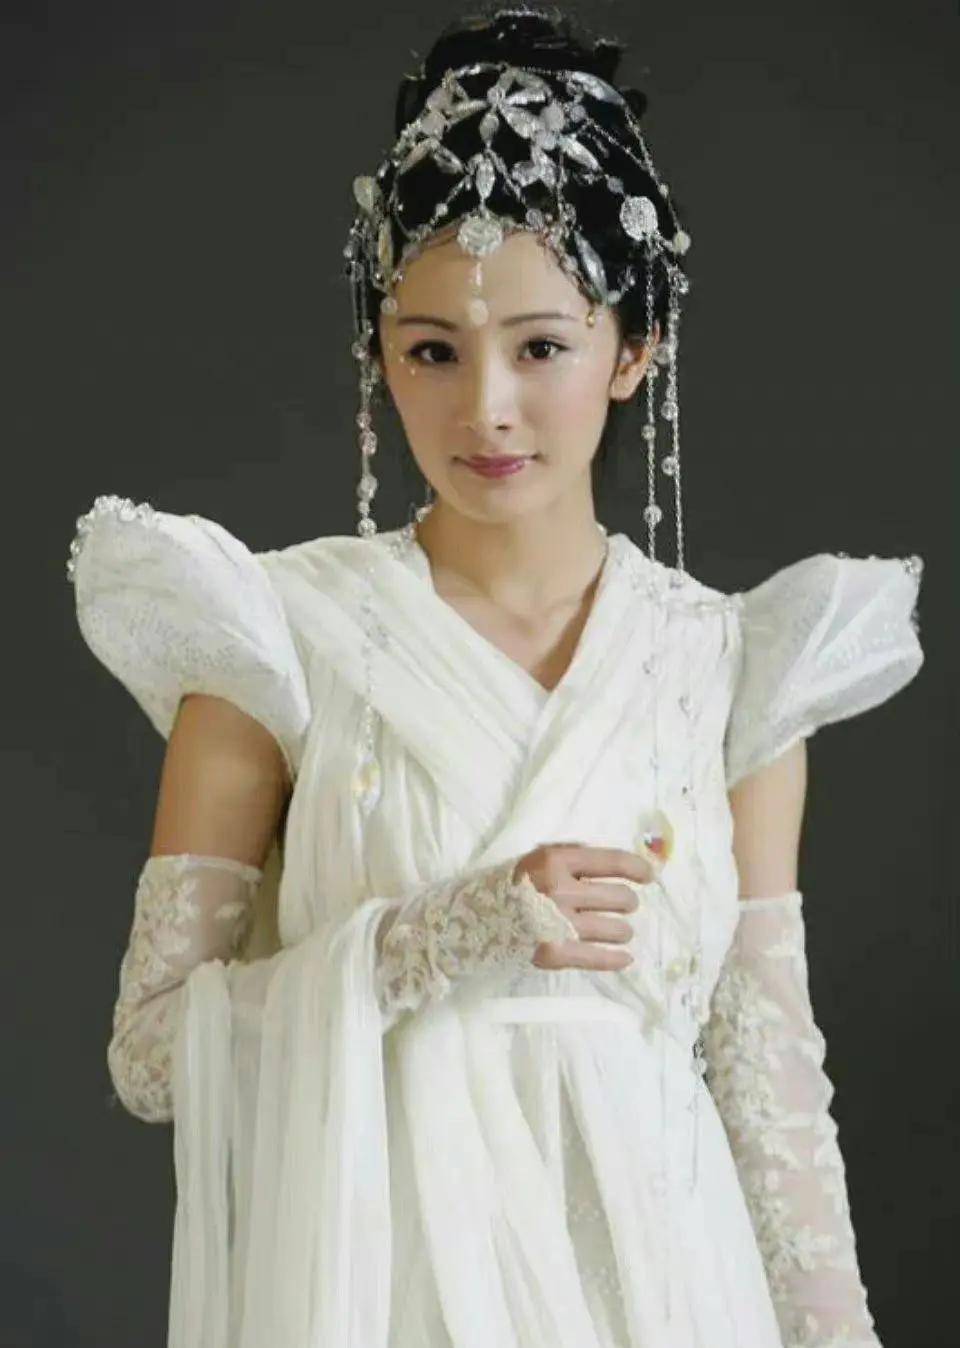 简单版的鬼步舞小苹果:盘点古装剧里的经典好看的白衣美女造型-第8张图片-太平洋在线下载